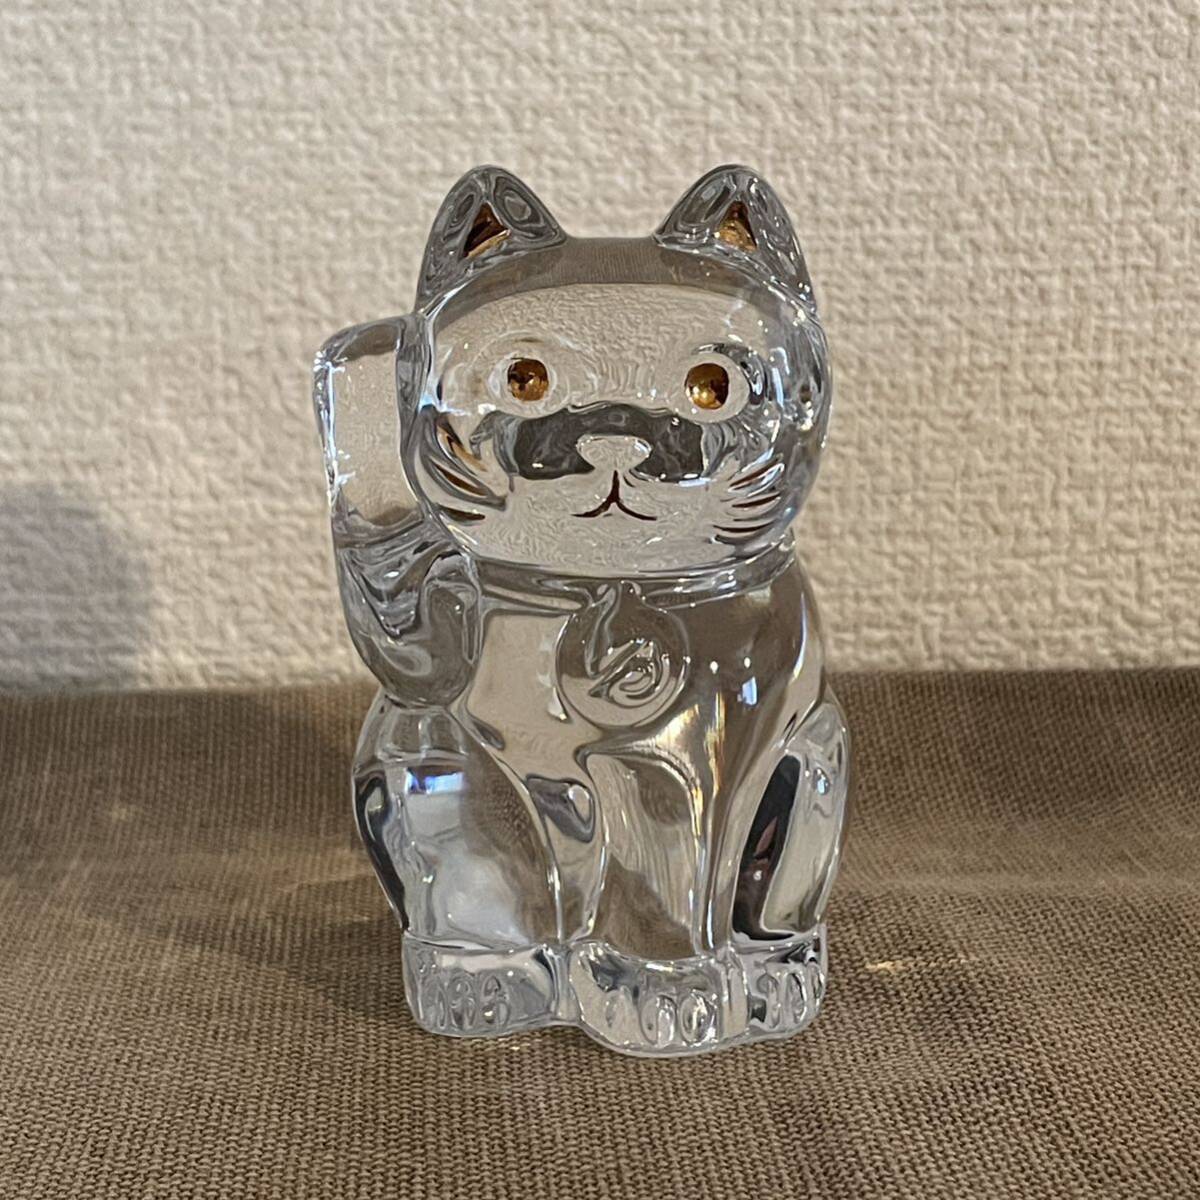 バカラ Baccarat 招き猫 クリスタルガラス 猫 ねこ インテリア オブジェ ガラス工芸 ラッキーキャット の画像1